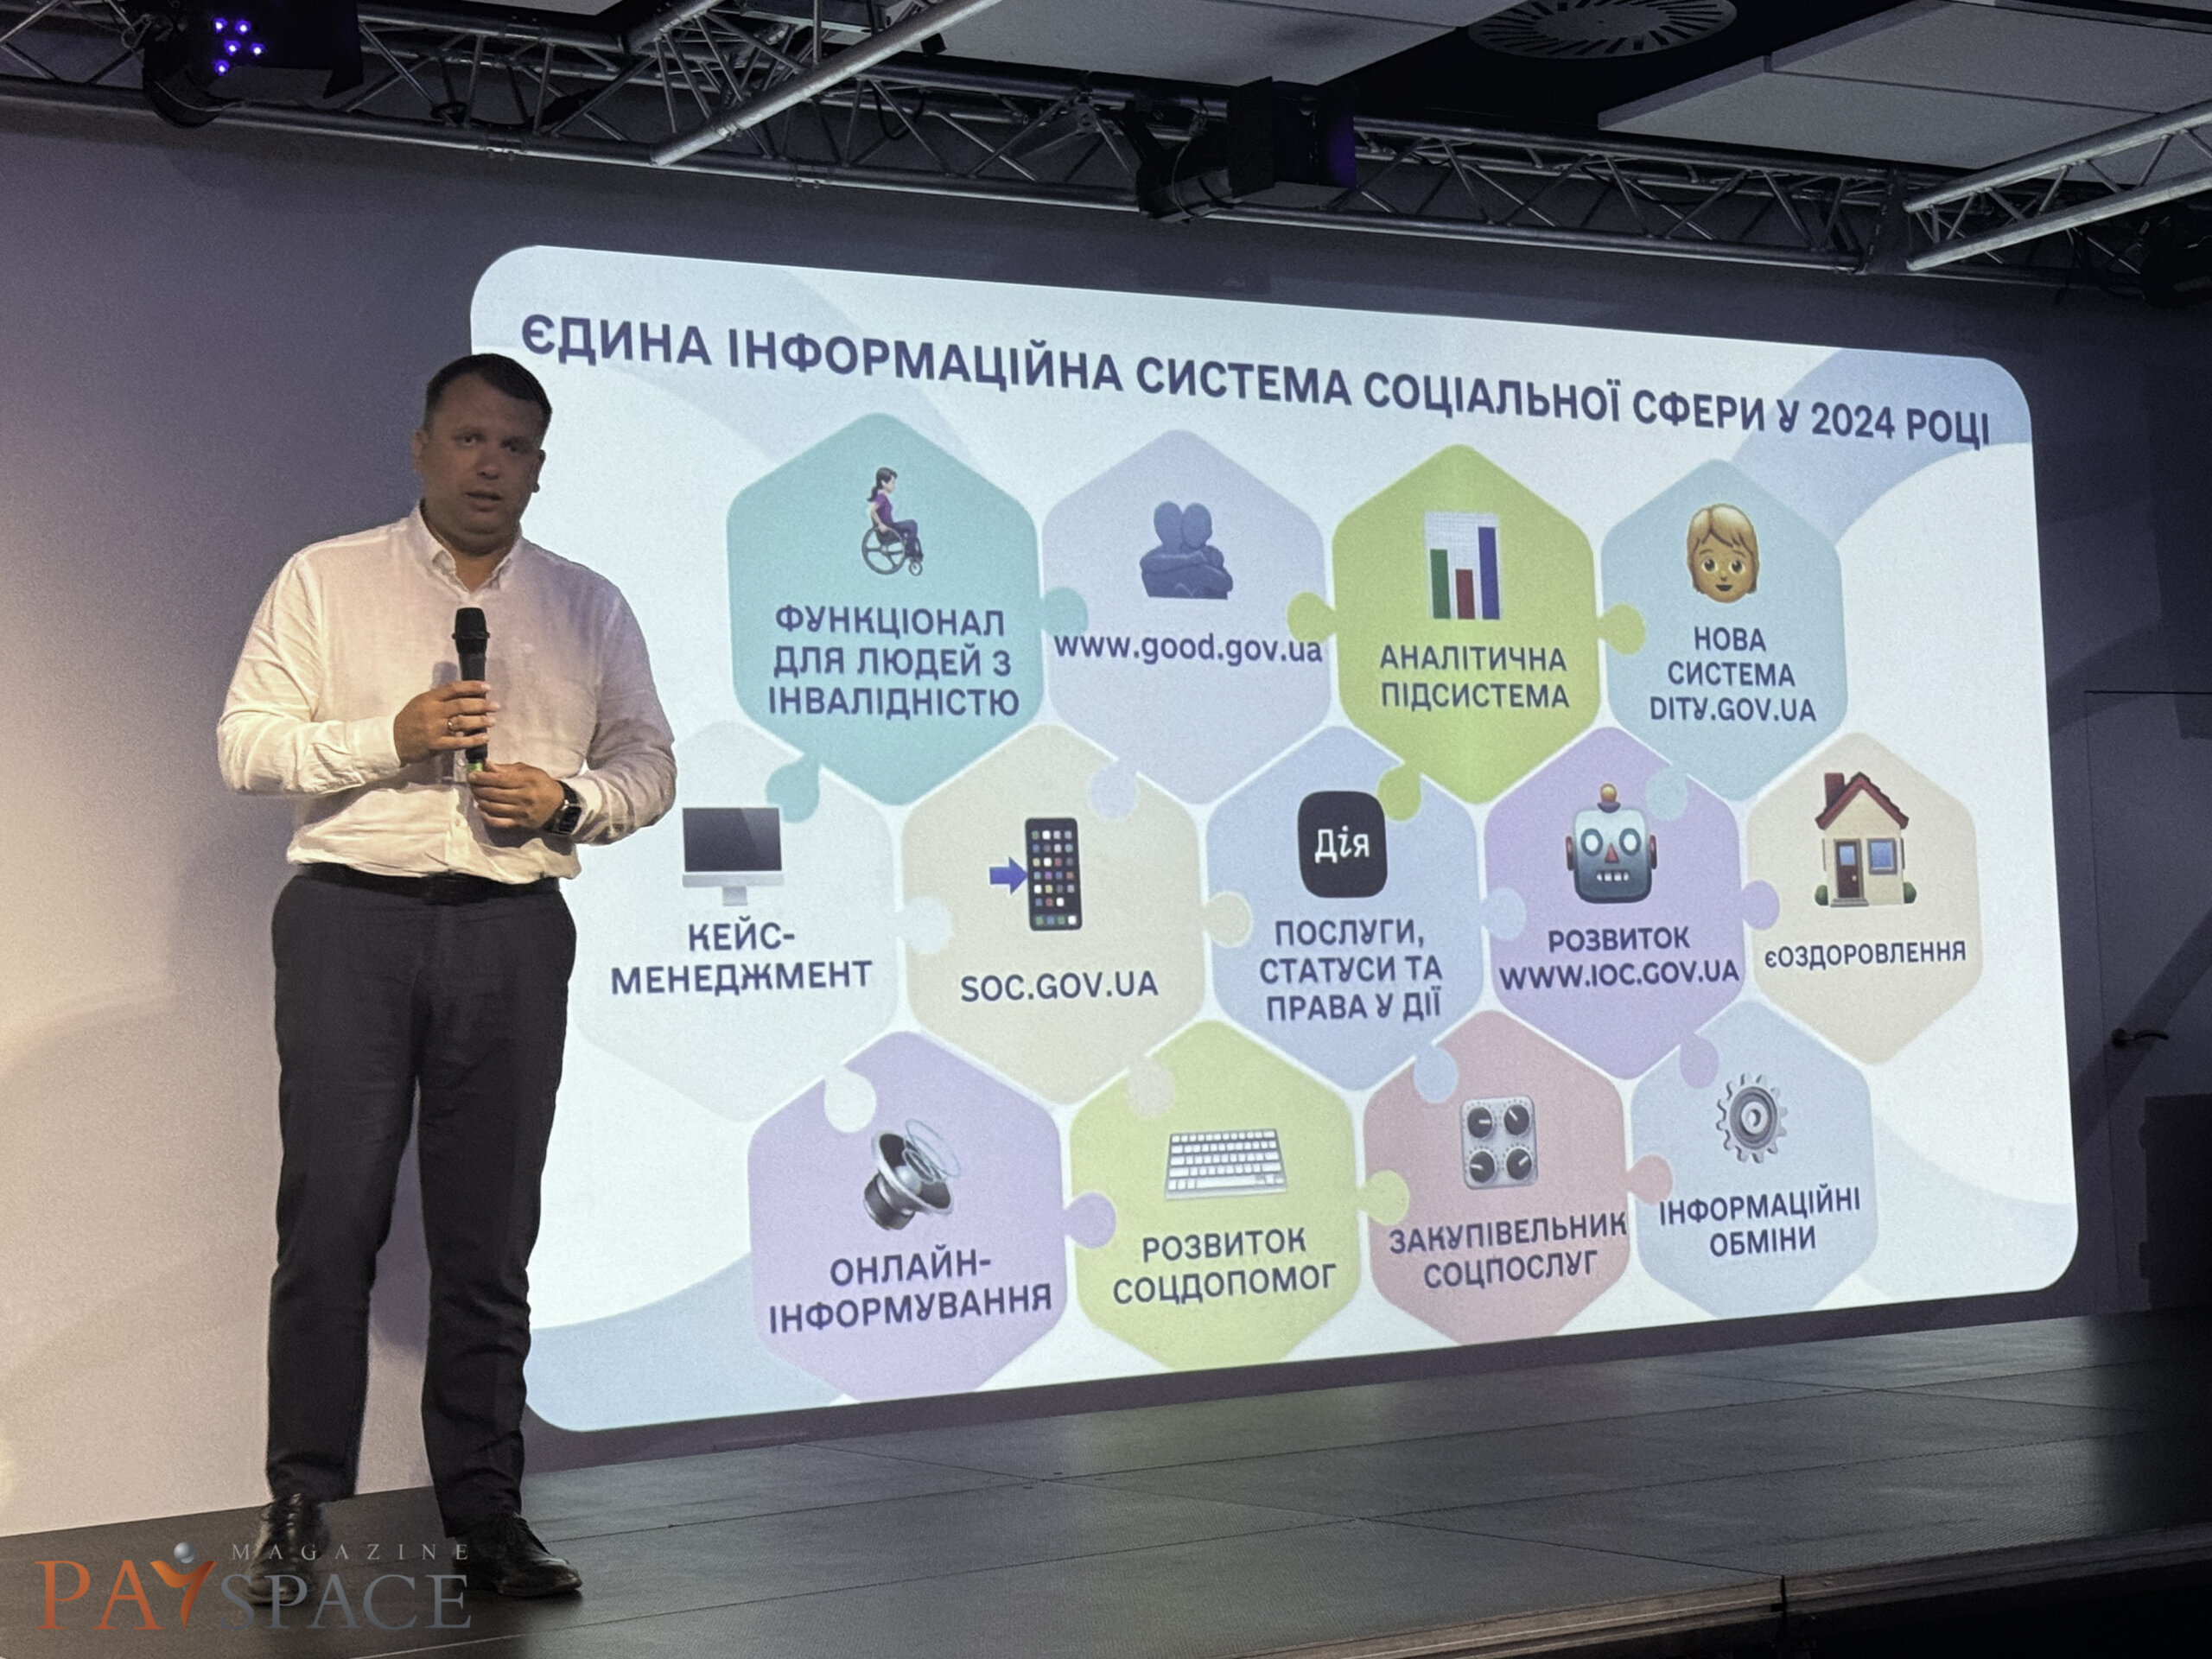 Константин Кошеленко, Заместитель Министра социальной политики Украины по вопросам цифрового развития